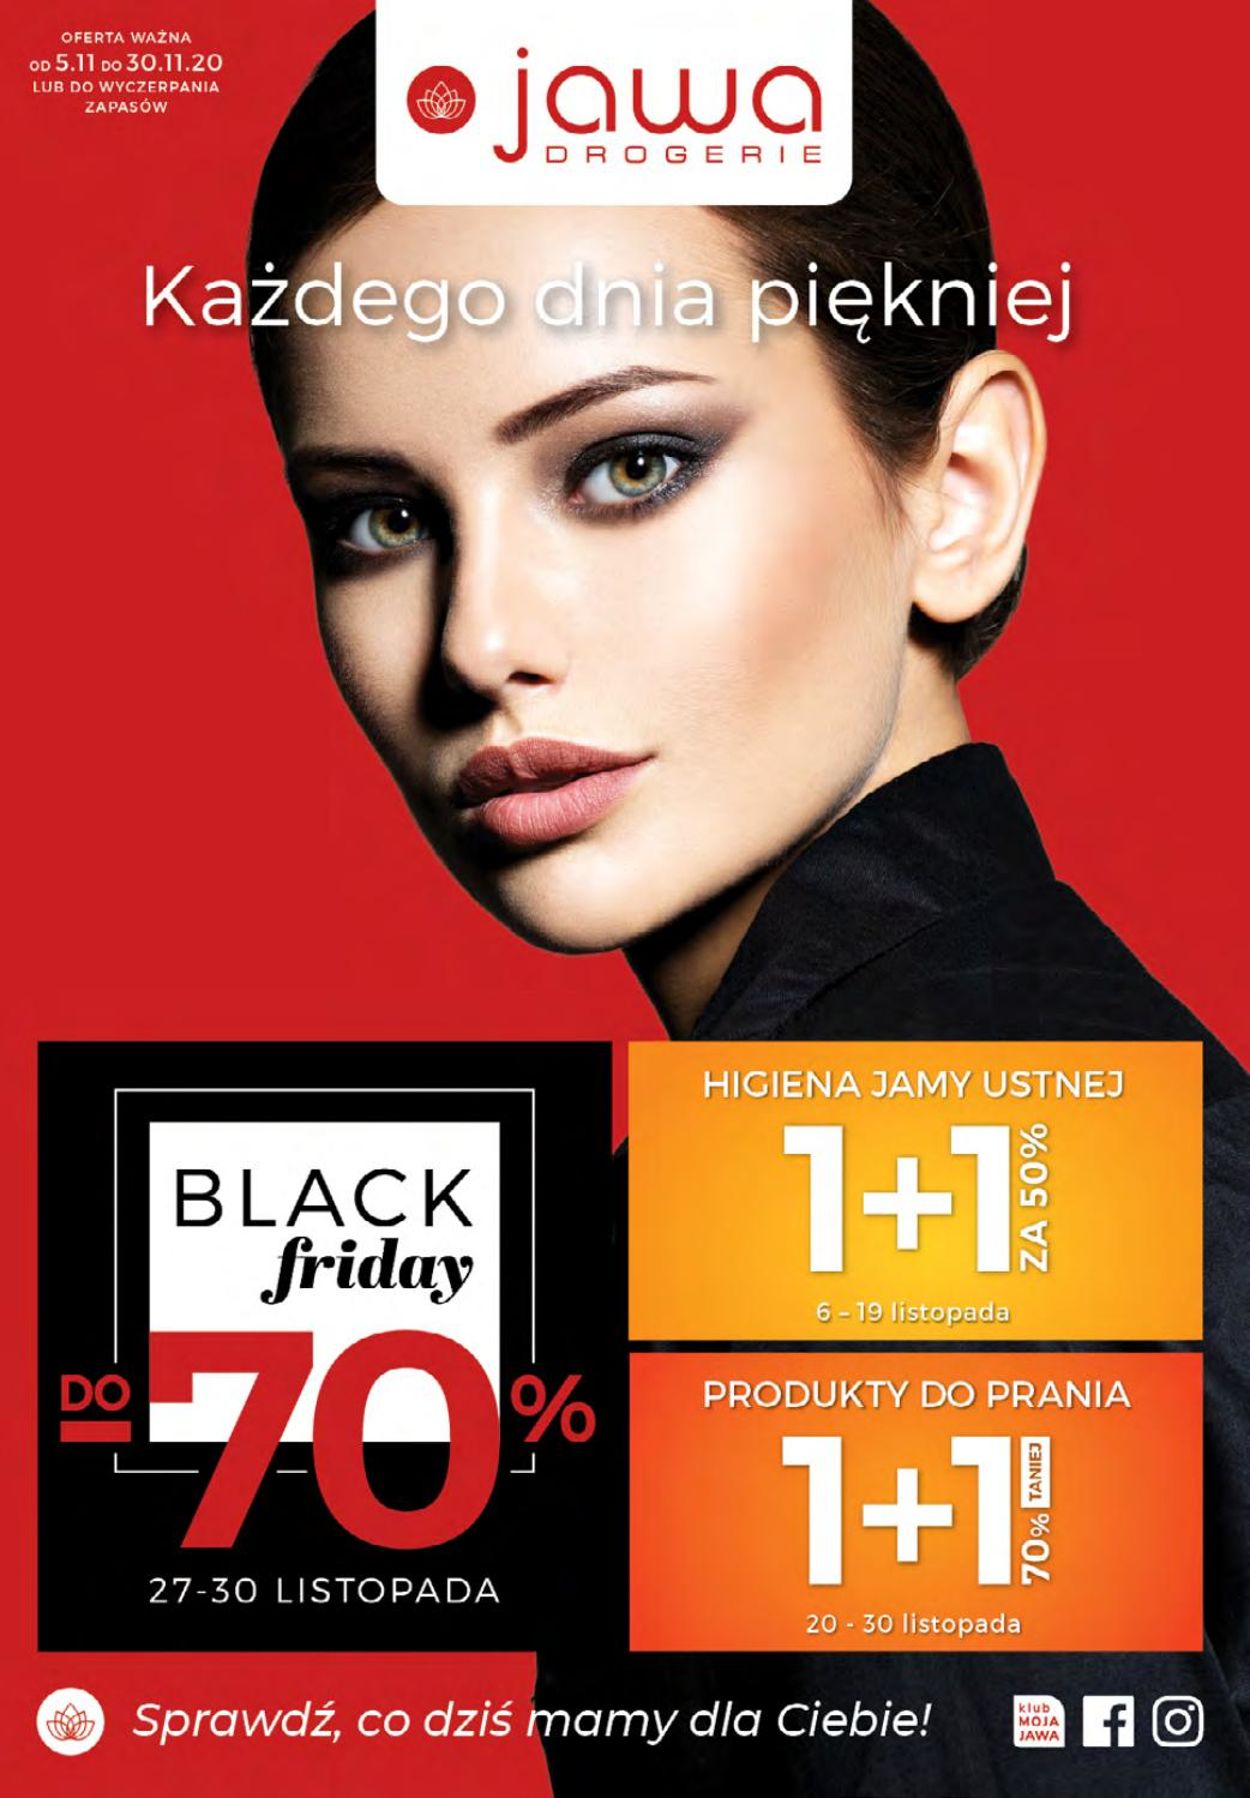 Gazetka promocyjna Drogerie Jawa Black Friday 2020 - 05.11-30.11.2020